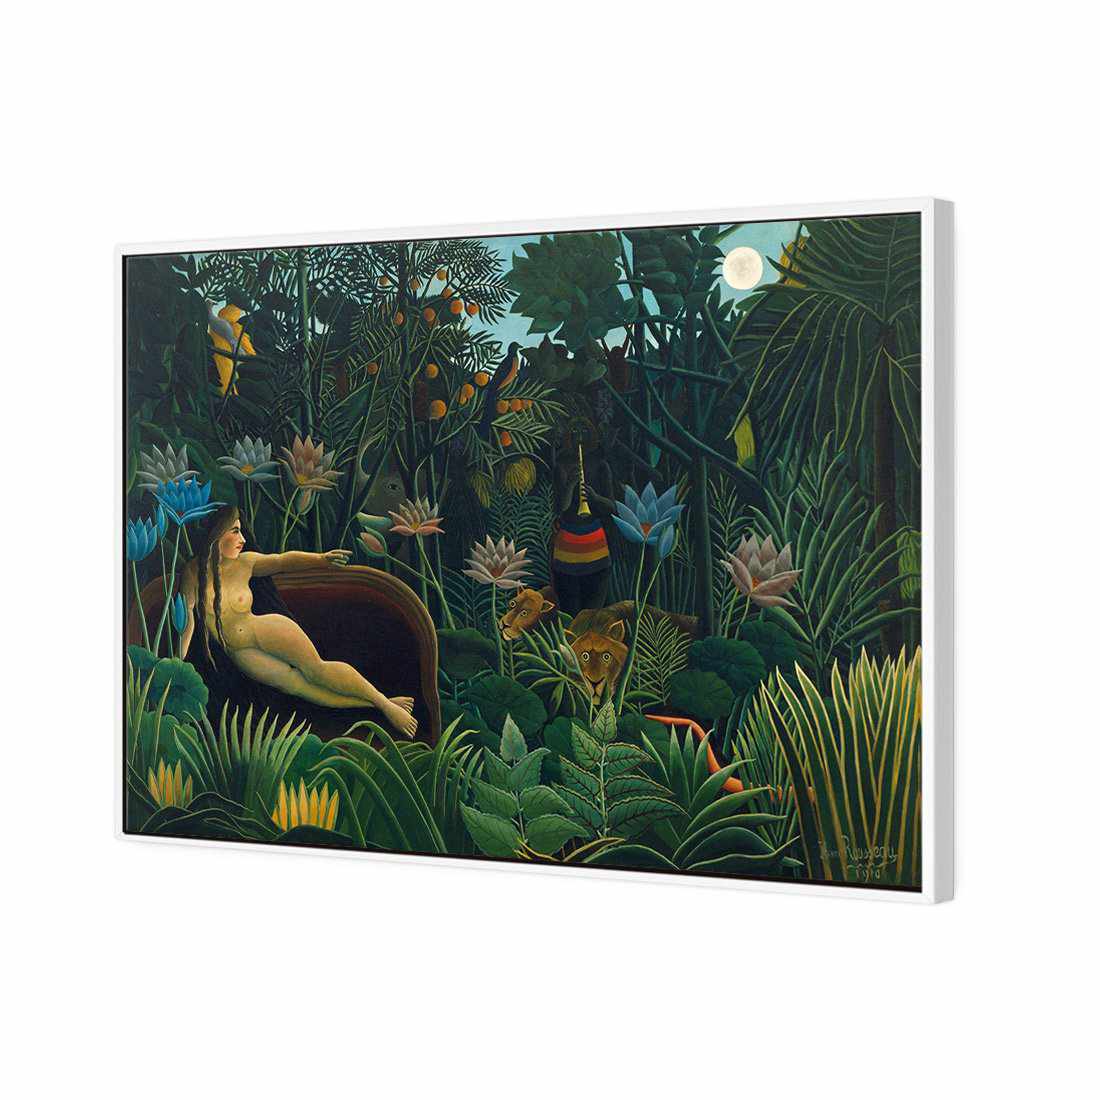 The Dream - Henri Rousseau Canvas Art-Canvas-Wall Art Designs-45x30cm-Canvas - White Frame-Wall Art Designs